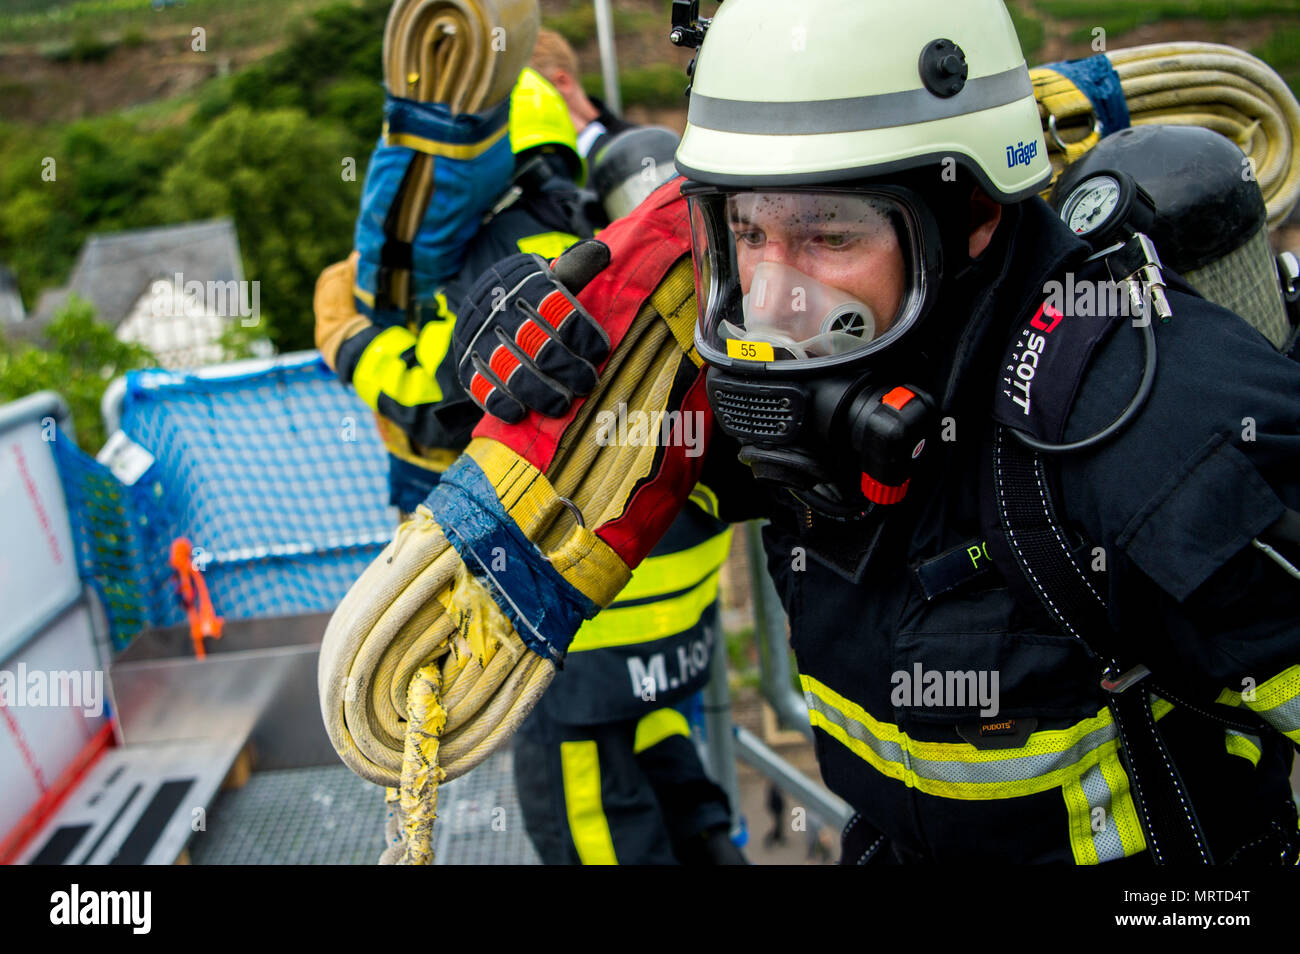 Un pompier de l'Allemagne porte un flexible pendant la course contre un  adversaire au cours de la 4e conférence annuelle de Mosel Firefighter  Combat Challenge dans Alf, Allemagne, le 30 juin 2017.